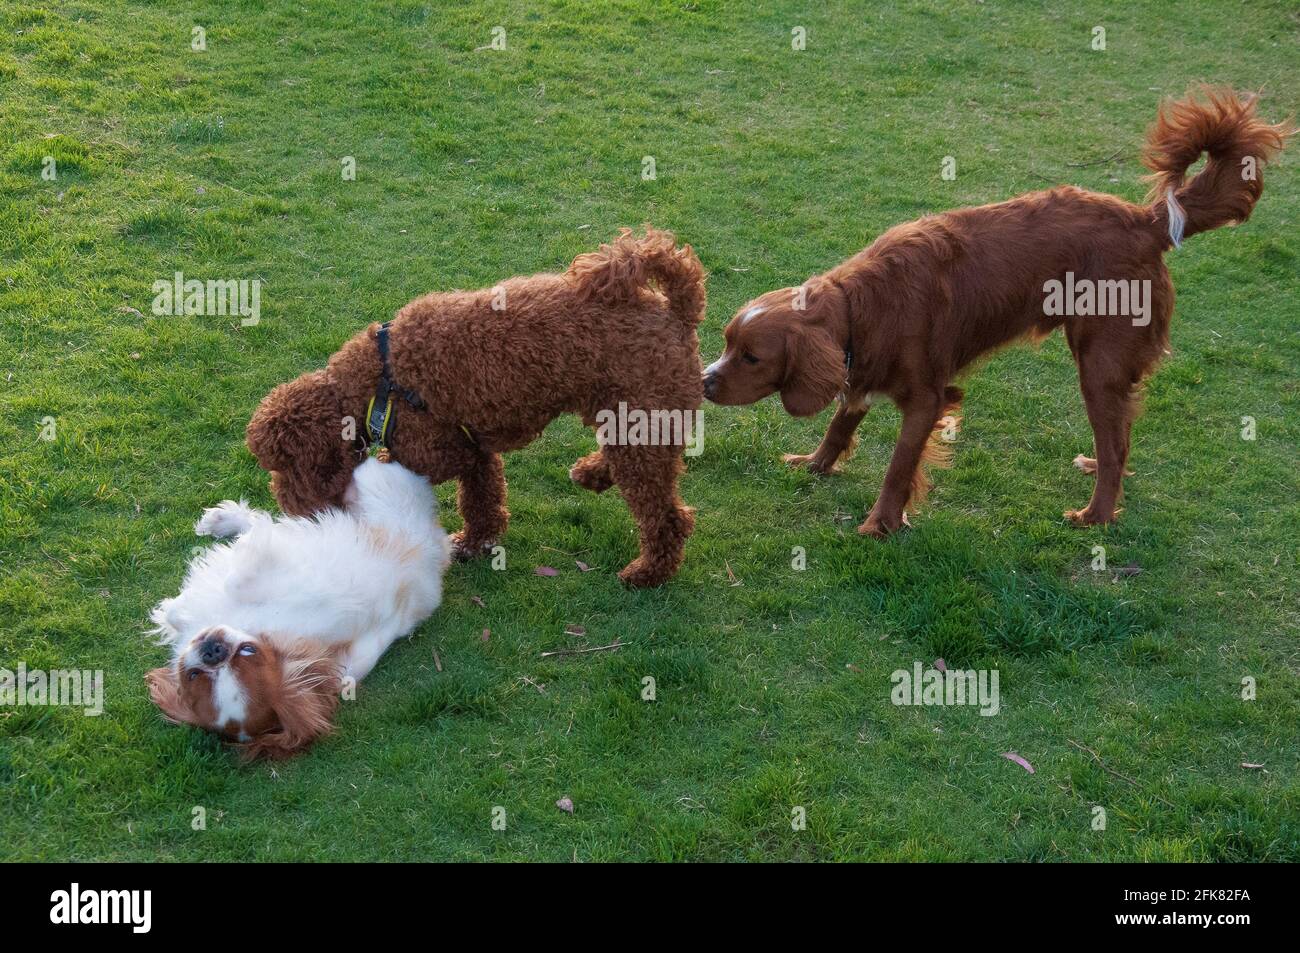 Tre cani di razze diverse - Re Carlo Spaniel, Labradoodle e Nova Scotia Duck Tolling Retriever - socializzando in un parco pubblico Foto Stock